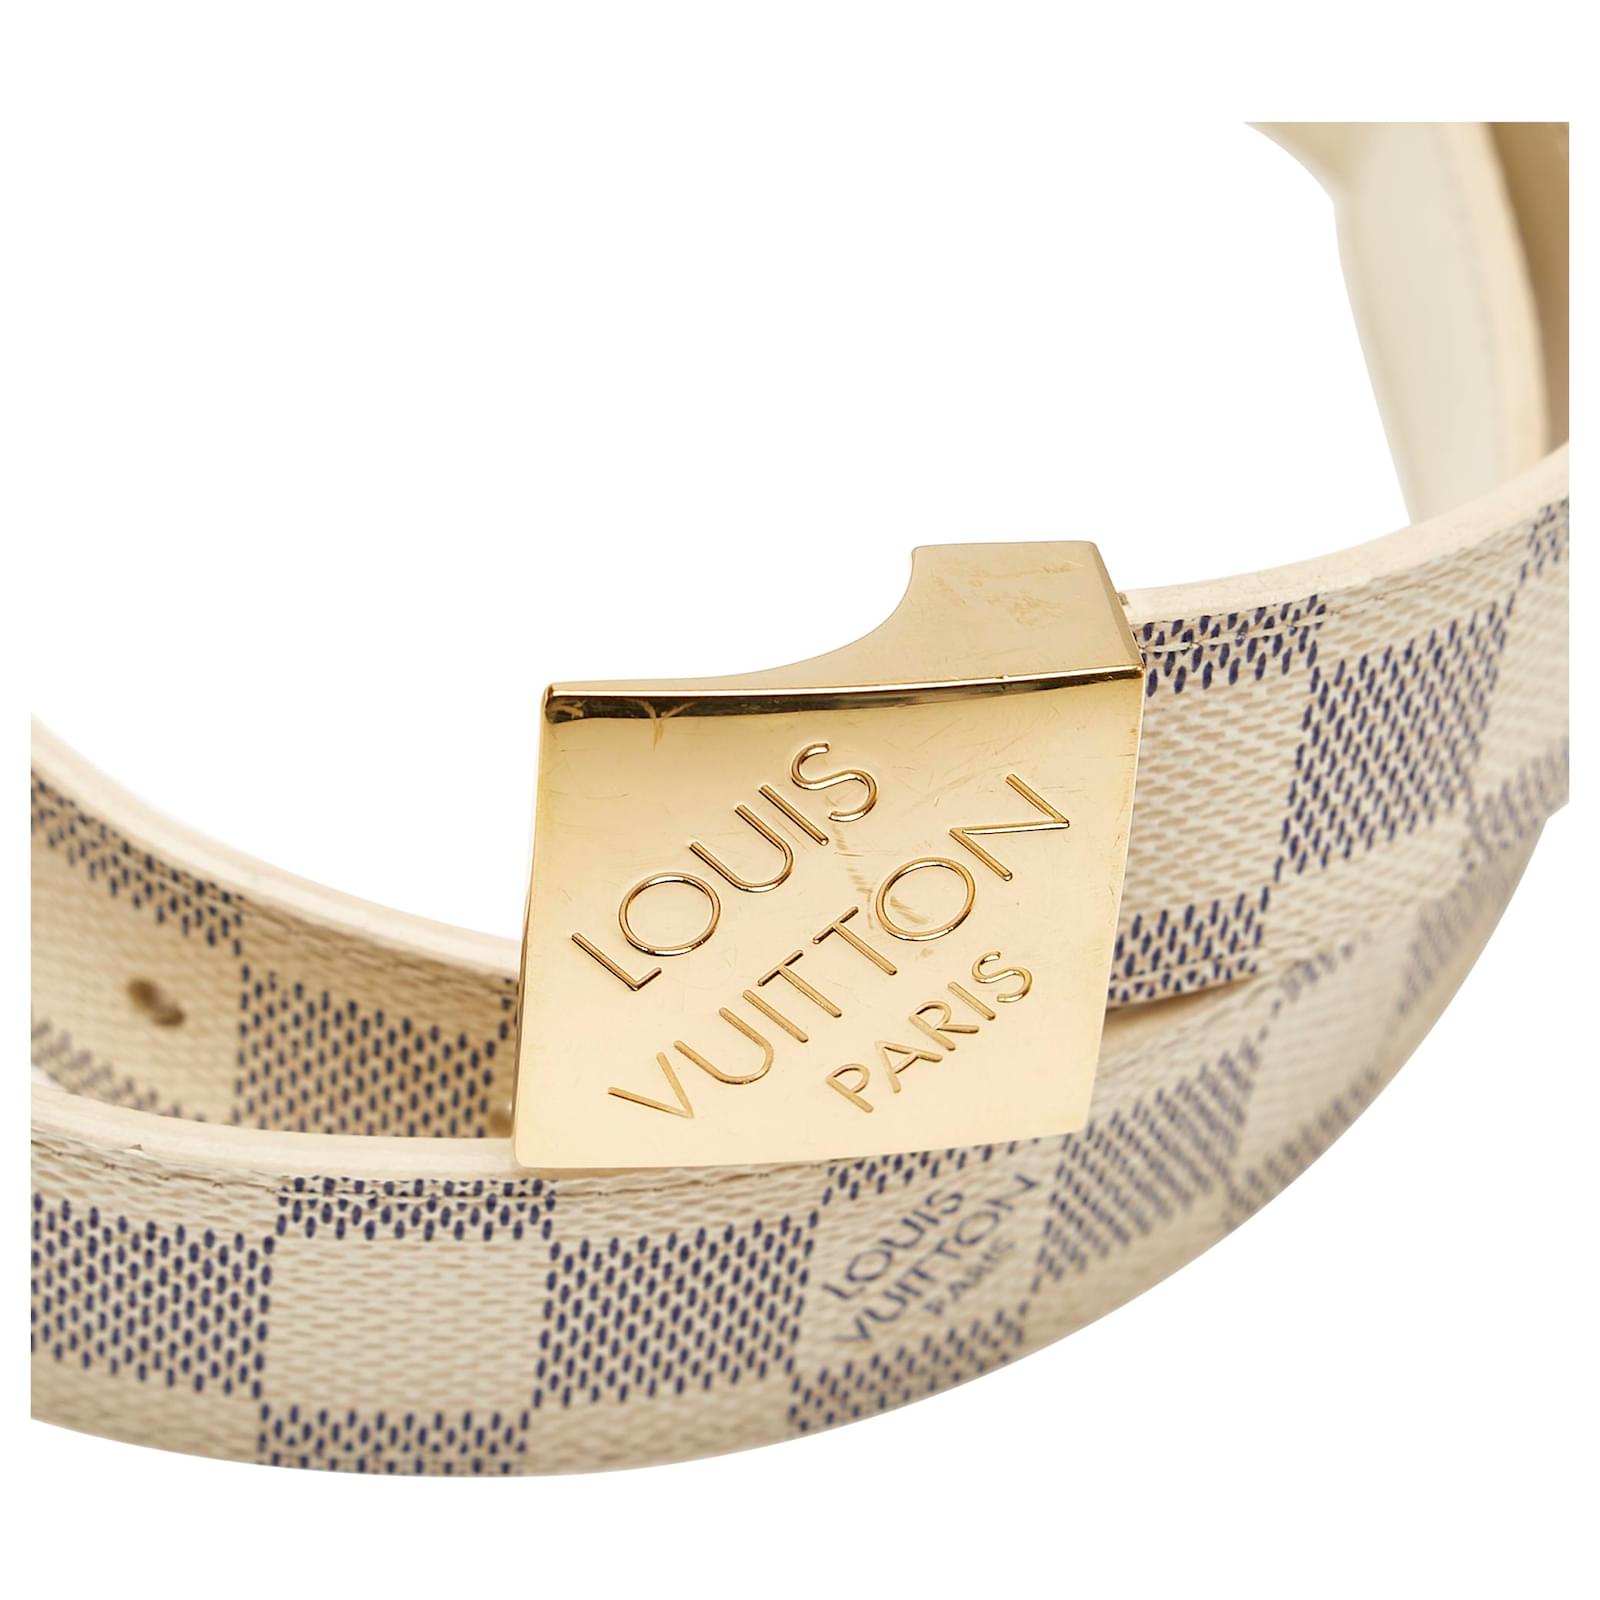 Cintura Louis Vuitton in damier azur